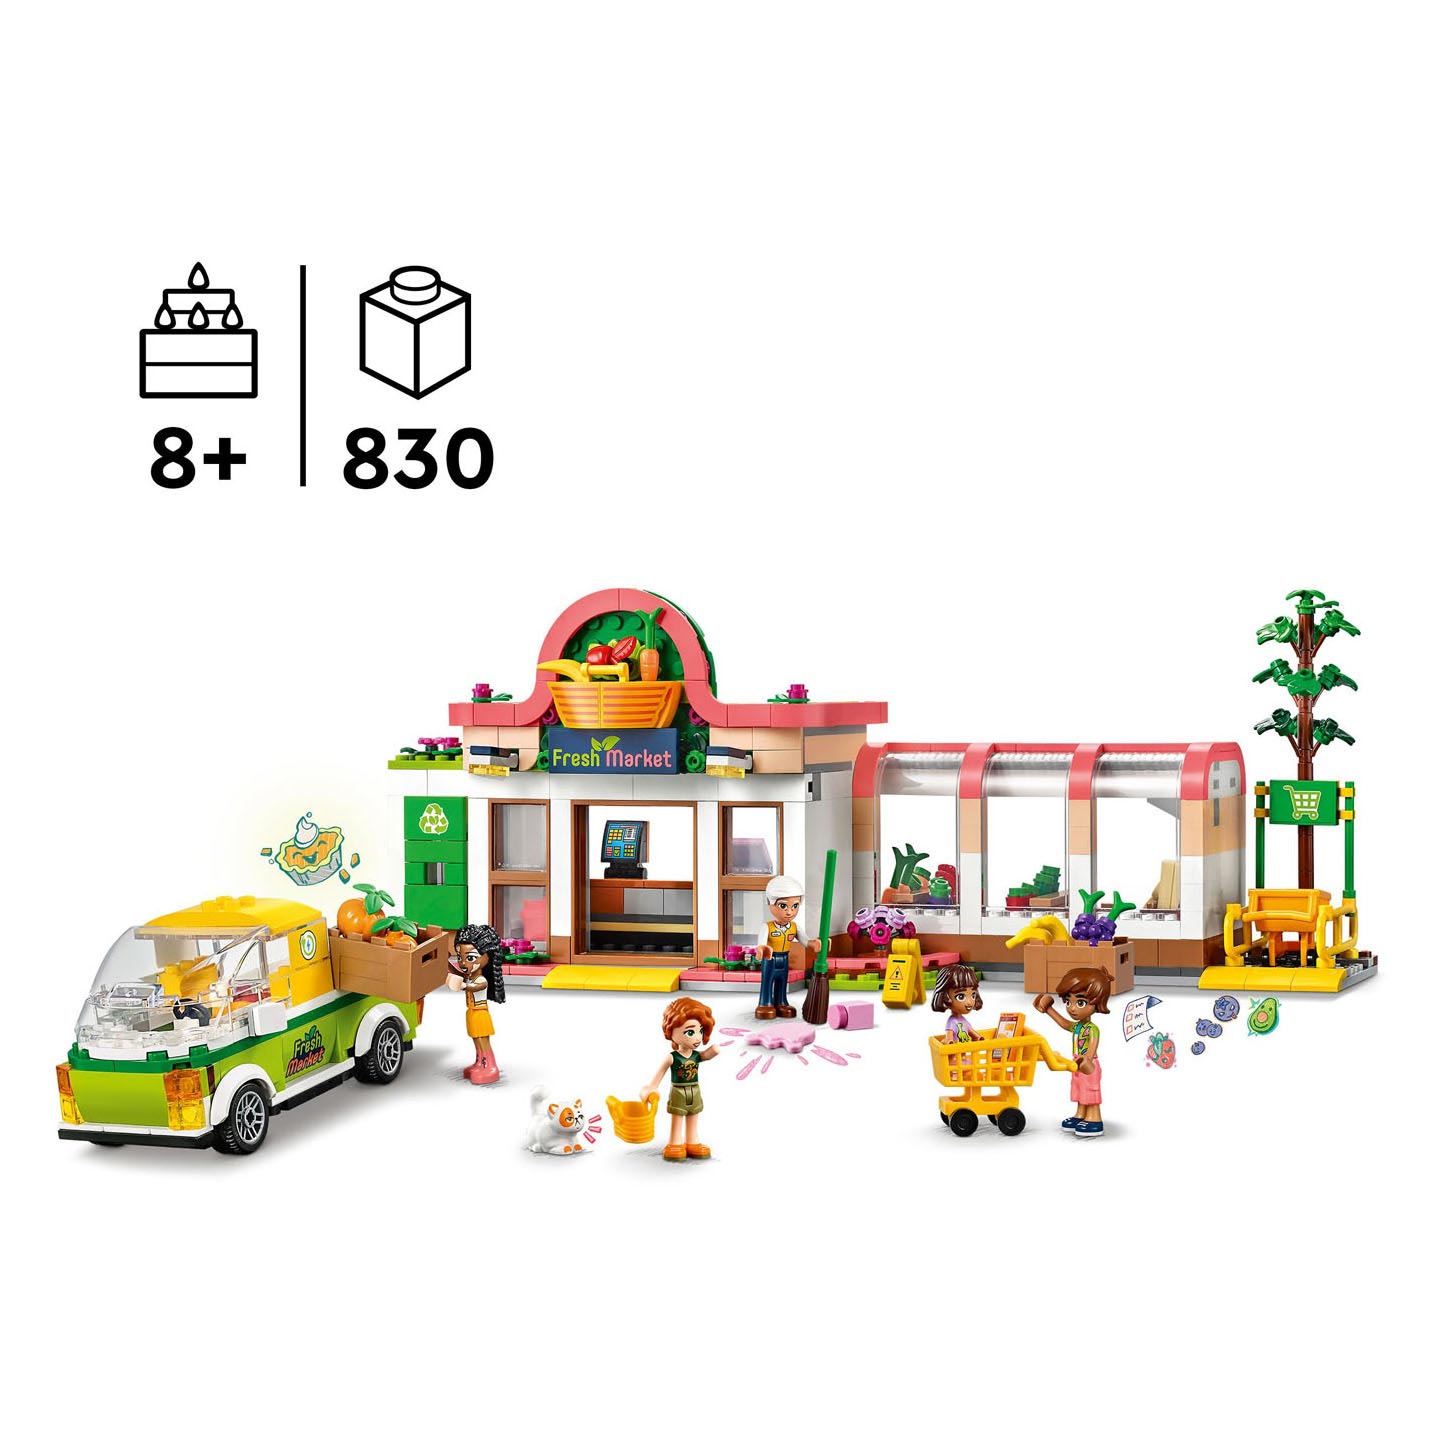 LEGO Friends 41729 Le supermarché bio